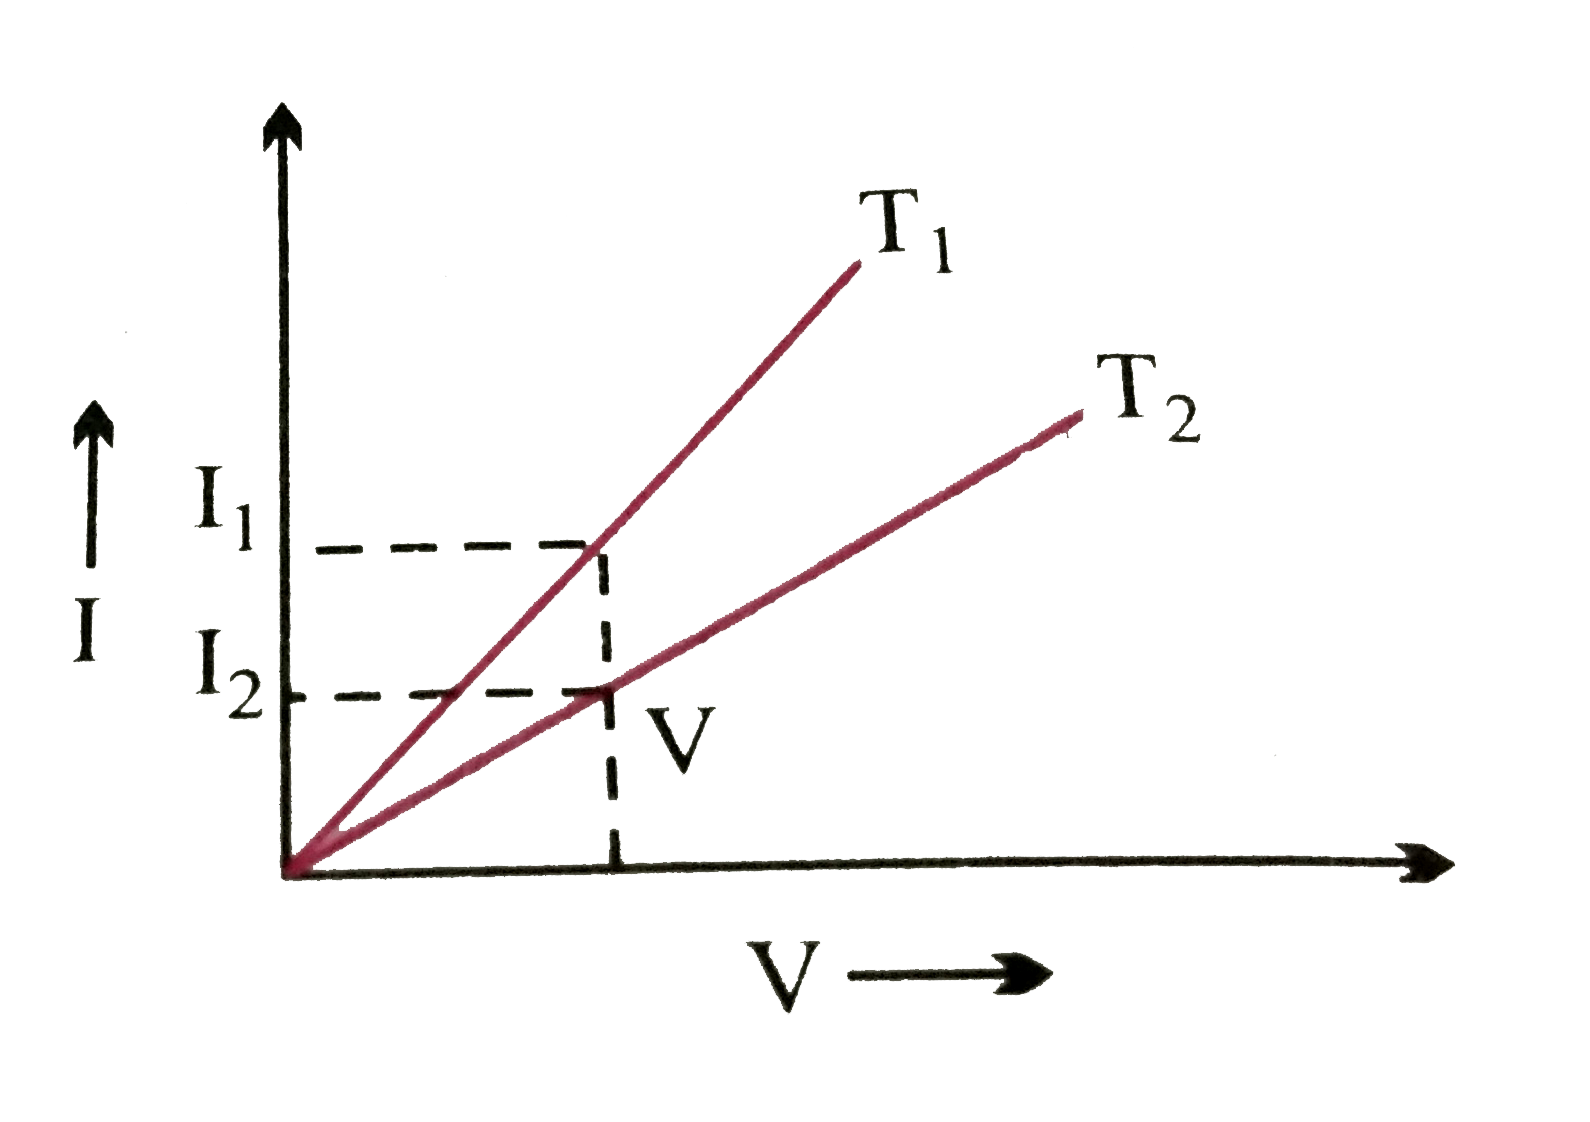 एक धात्विक तार के लिए निम्न चित्र में ताप T(1) और T(2) पर V - I ग्राफ प्रदर्शित किये गये है । ताप  T(1)और T(2) में से कौन-सा ताप उच्च है और क्यों ?